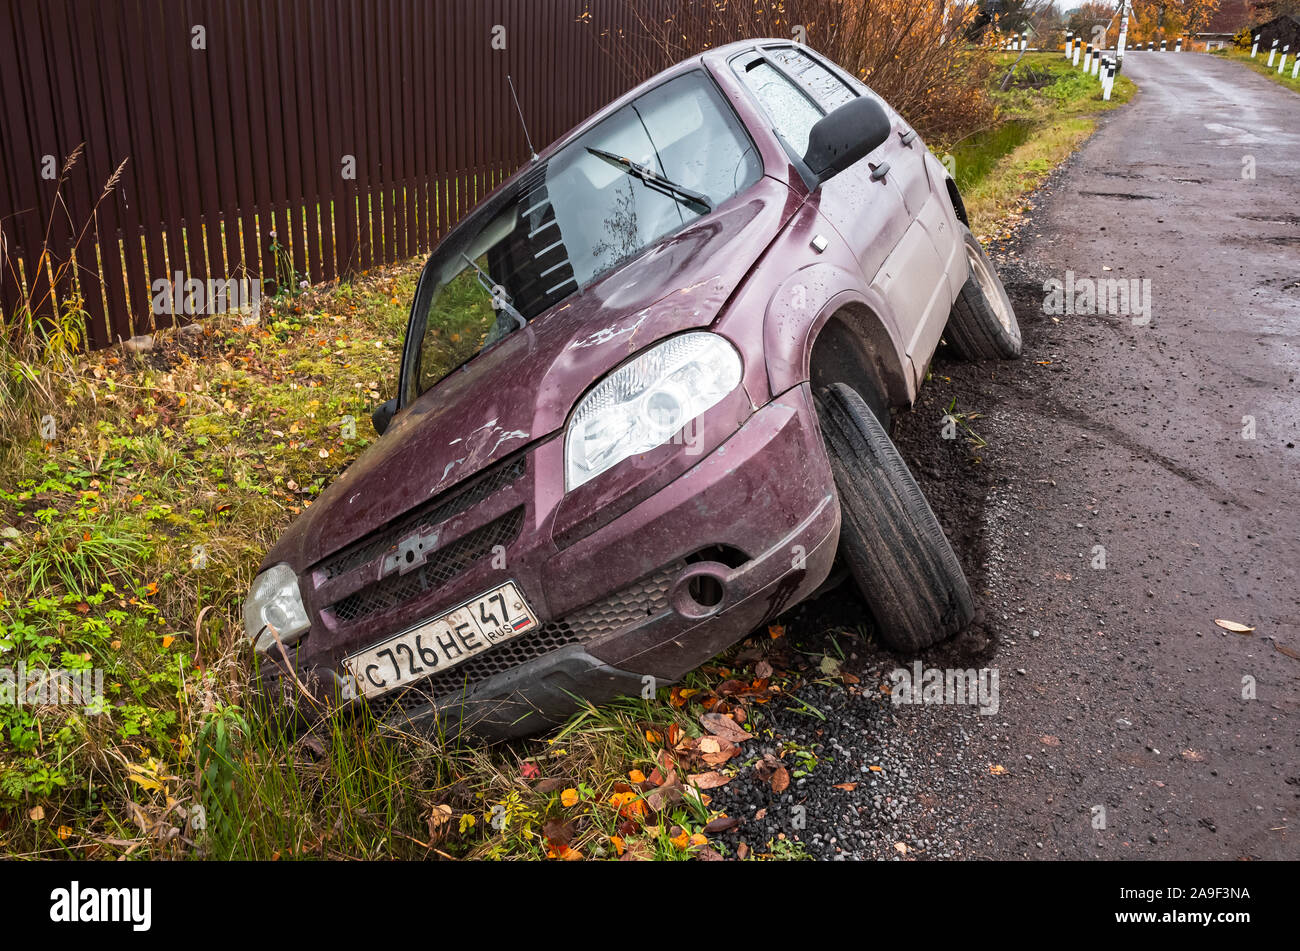 San Pietroburgo, Russia - 19 Ottobre 2019: Chevrolet Niva auto in un incidente si trova in un fosso da strada rurale di giorno Foto Stock